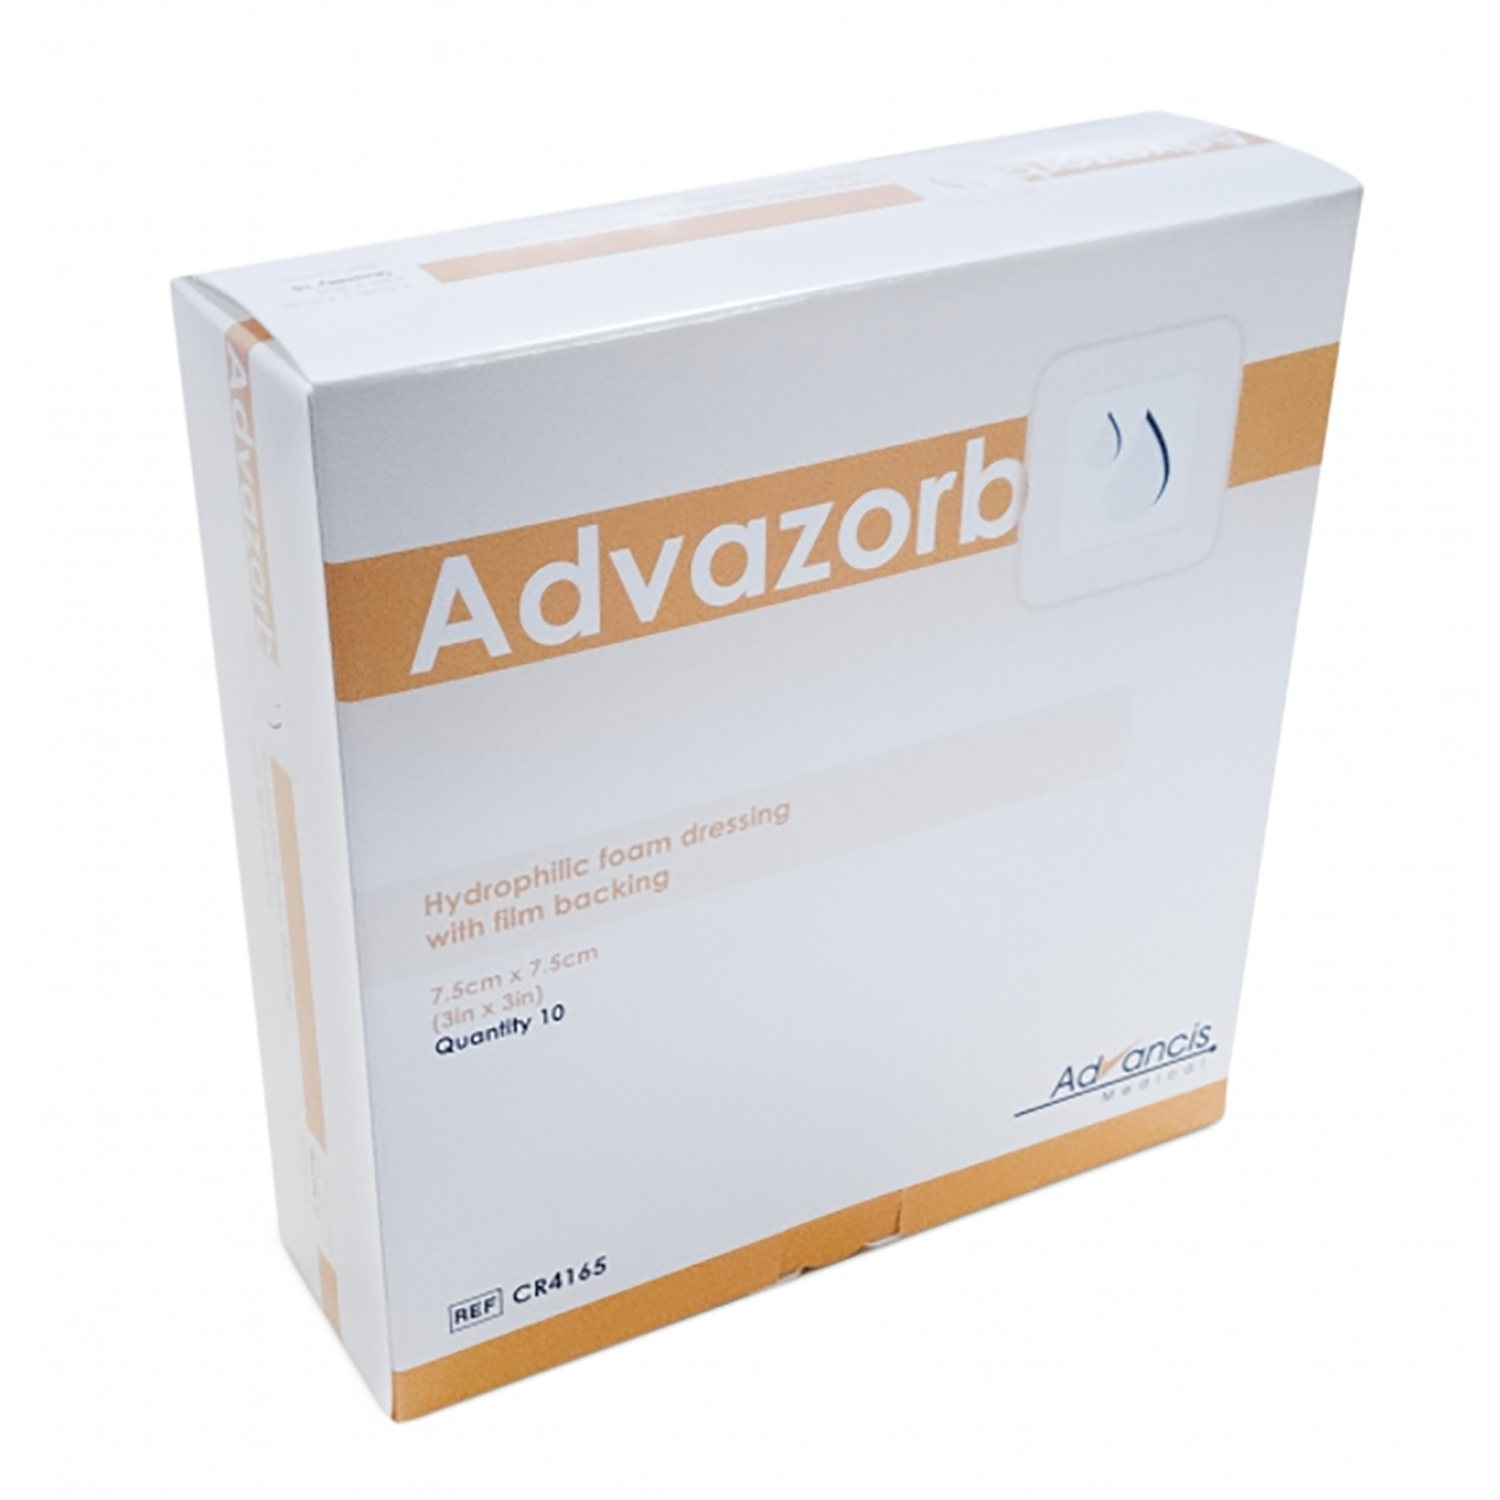 Advazorb Absorbent Foam Dressing | 7.5 x 7.5cm | Pack of 10 (2)